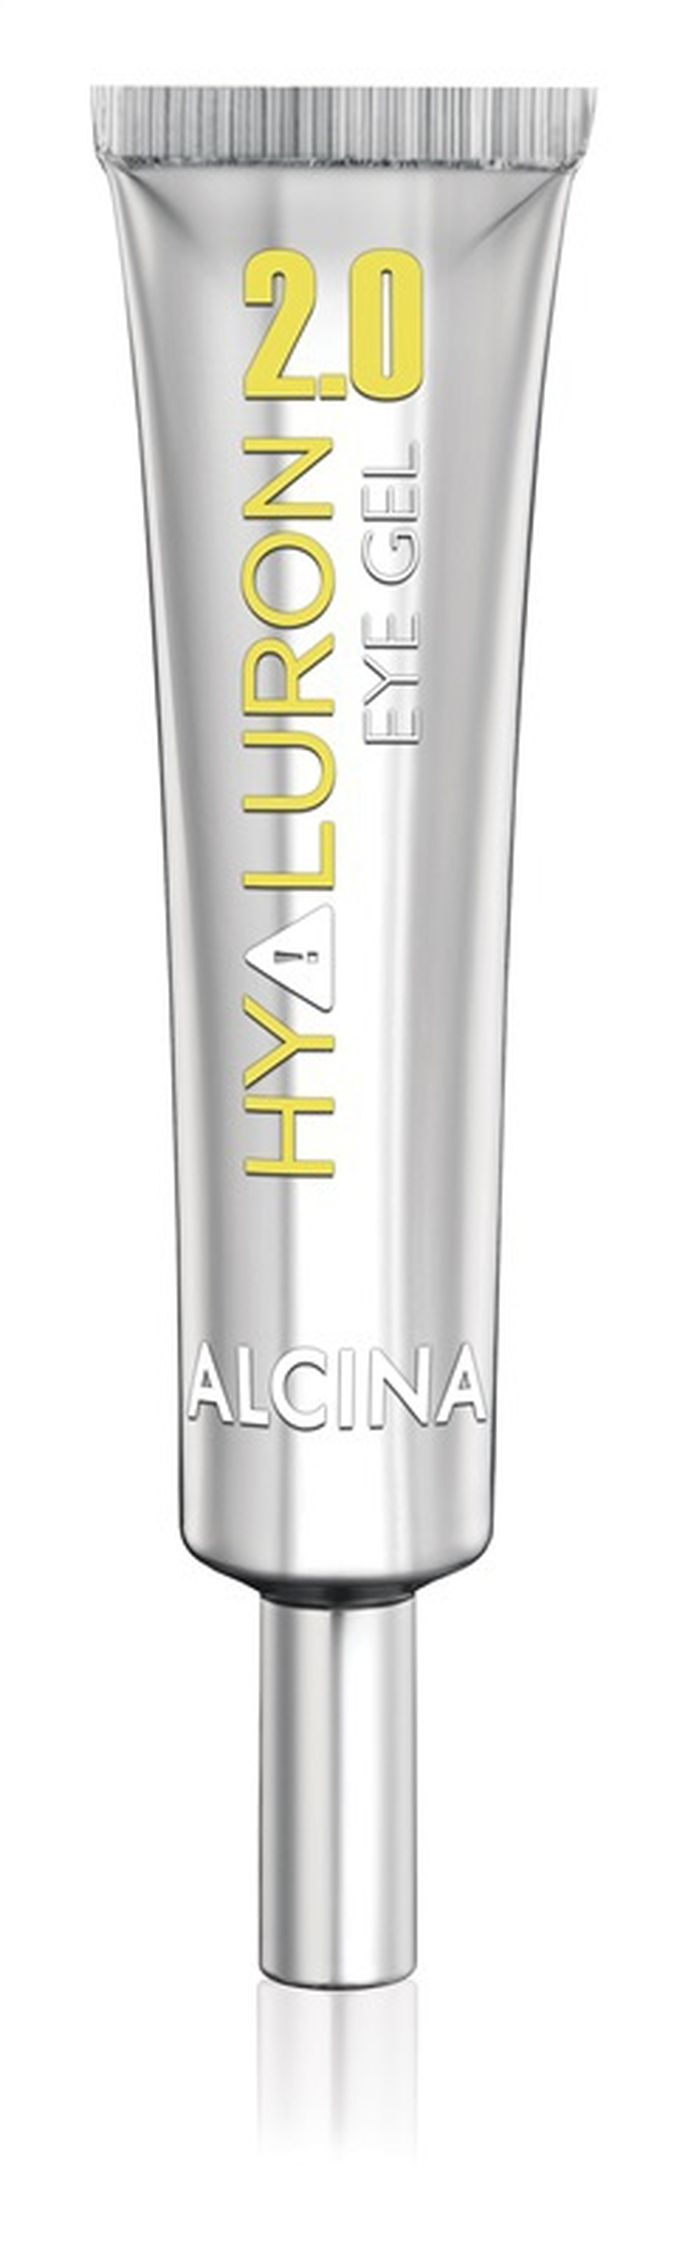 Oční gel s vyhlazujícím efektem, Hyaluron 2.0, Alcina, dostupné ve vybraných salonech, 378 Kč